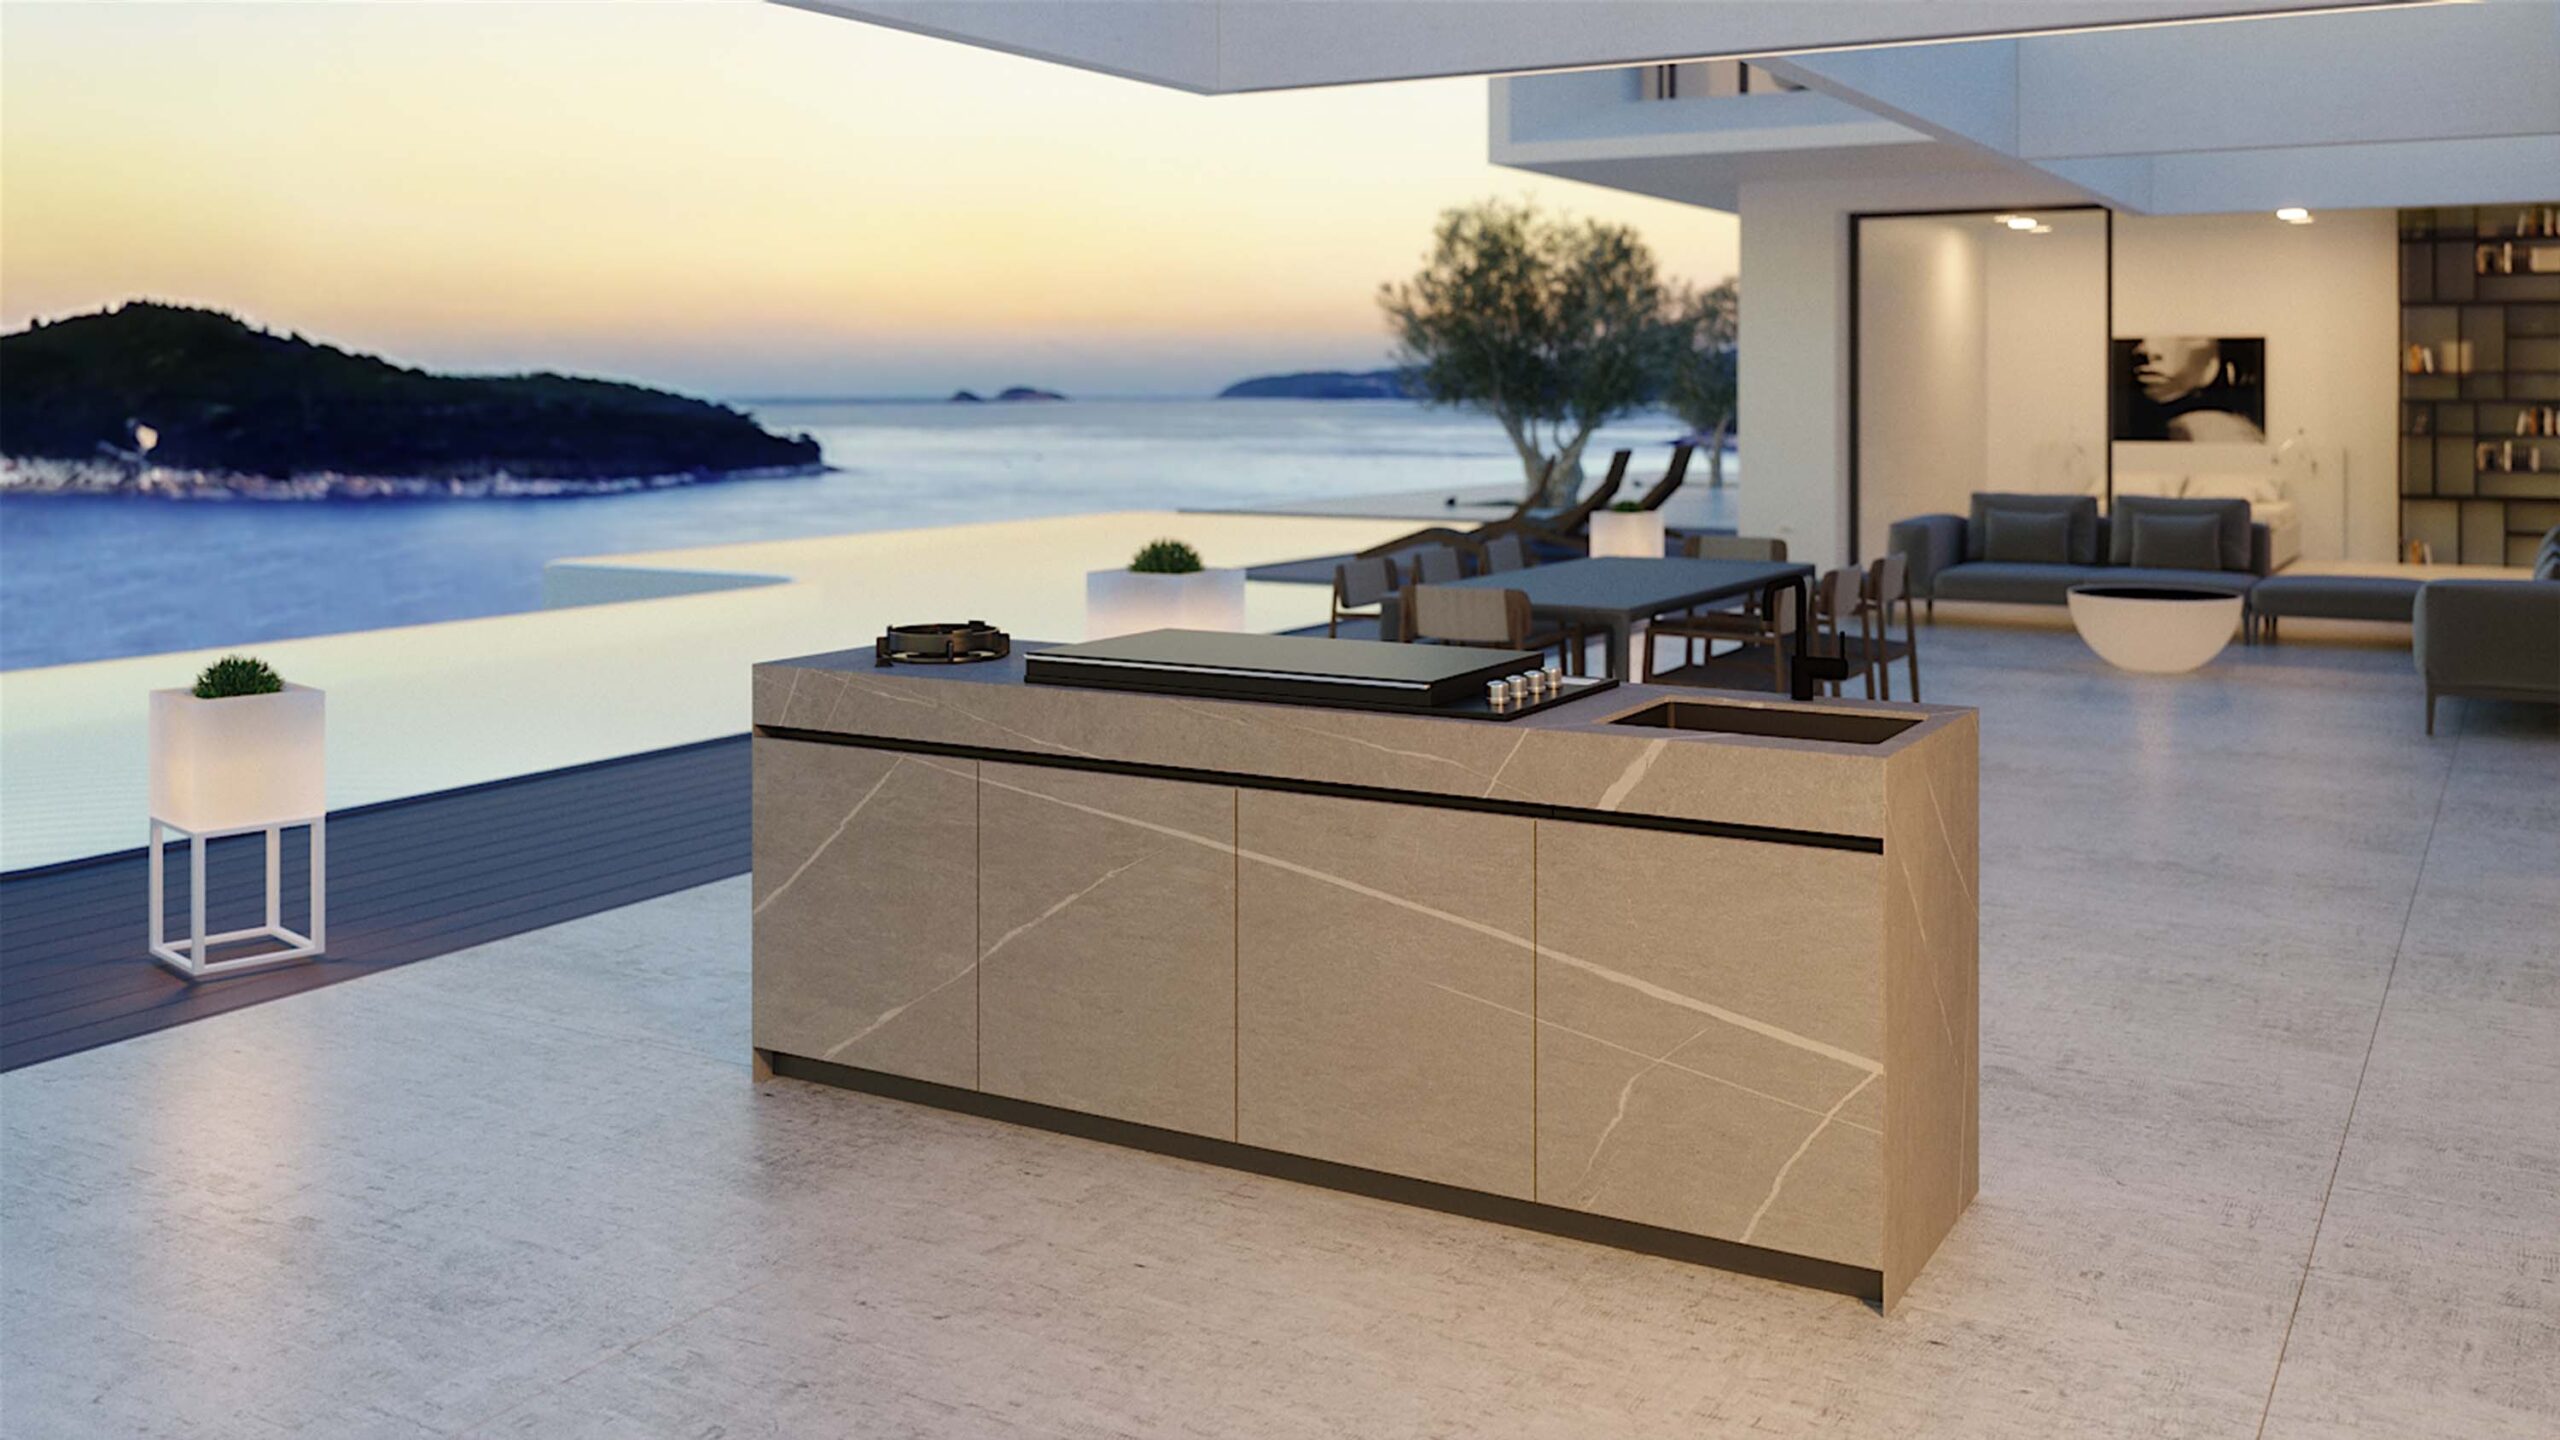 Luxury ceramic modern outdoor kitchen island. Designed and installed by Krieder UK.